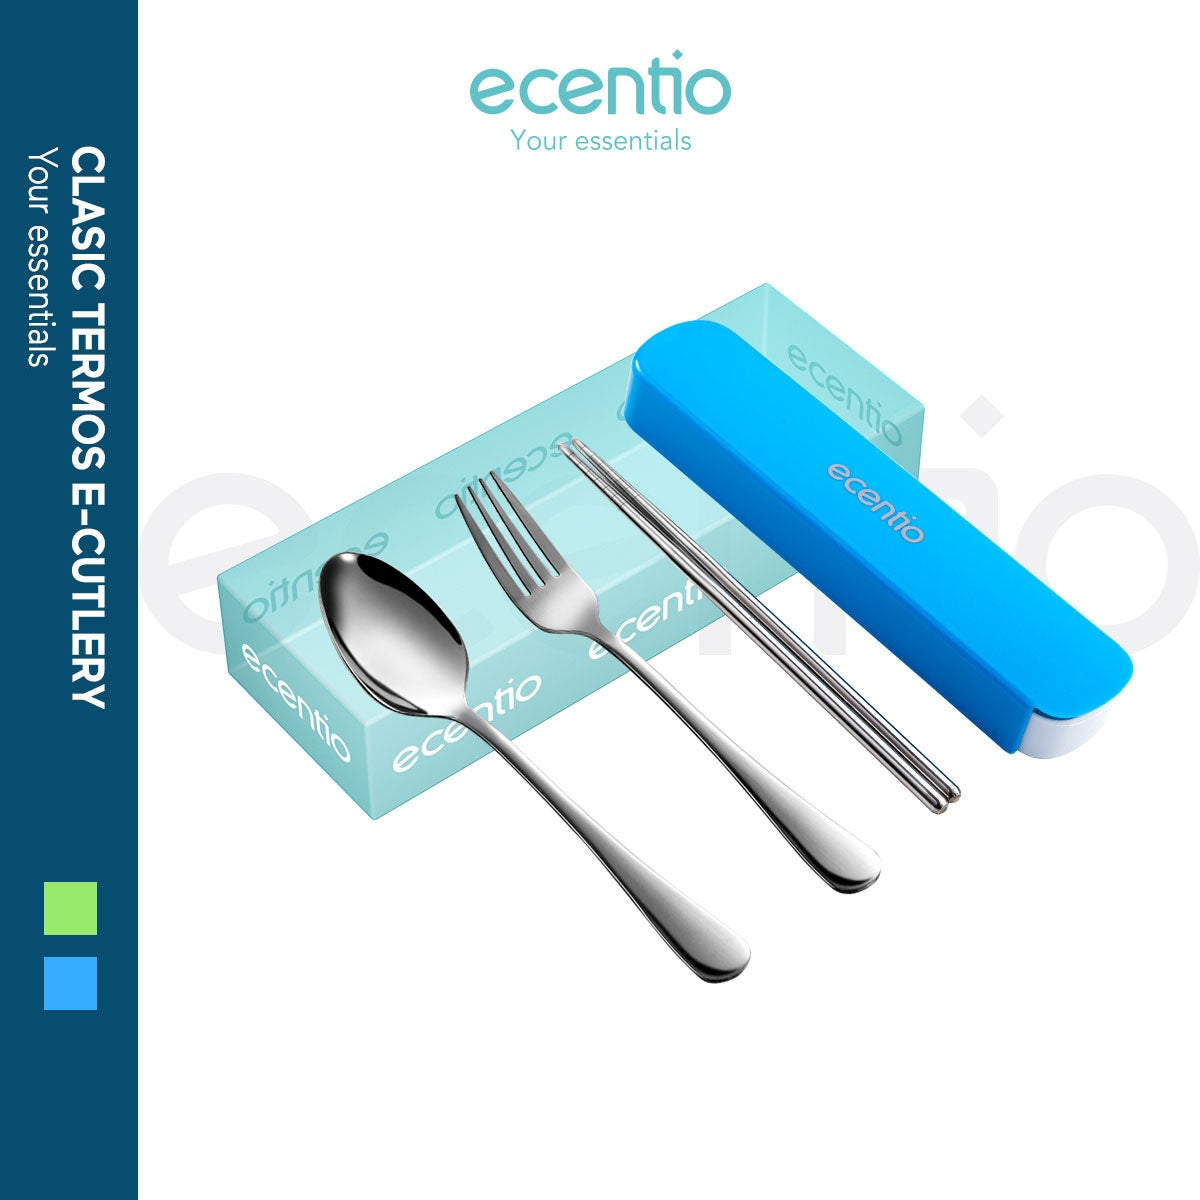 ecentio Sendok SetGarpu Sumpit Stainless Steel + Kotak - ecentio